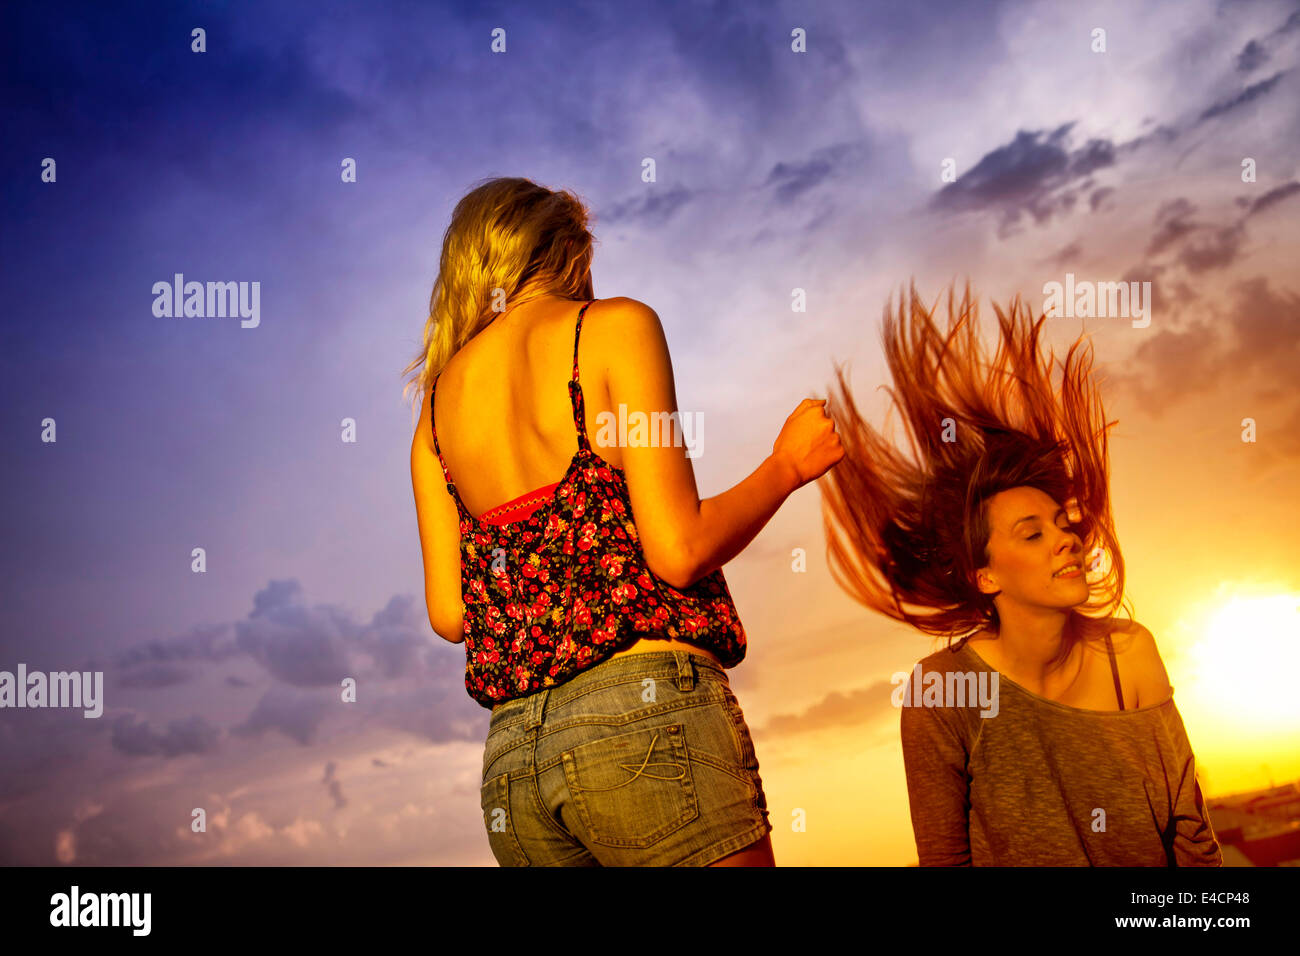 Two young women enjoying the sunset, Osijek, Croatia Stock Photo